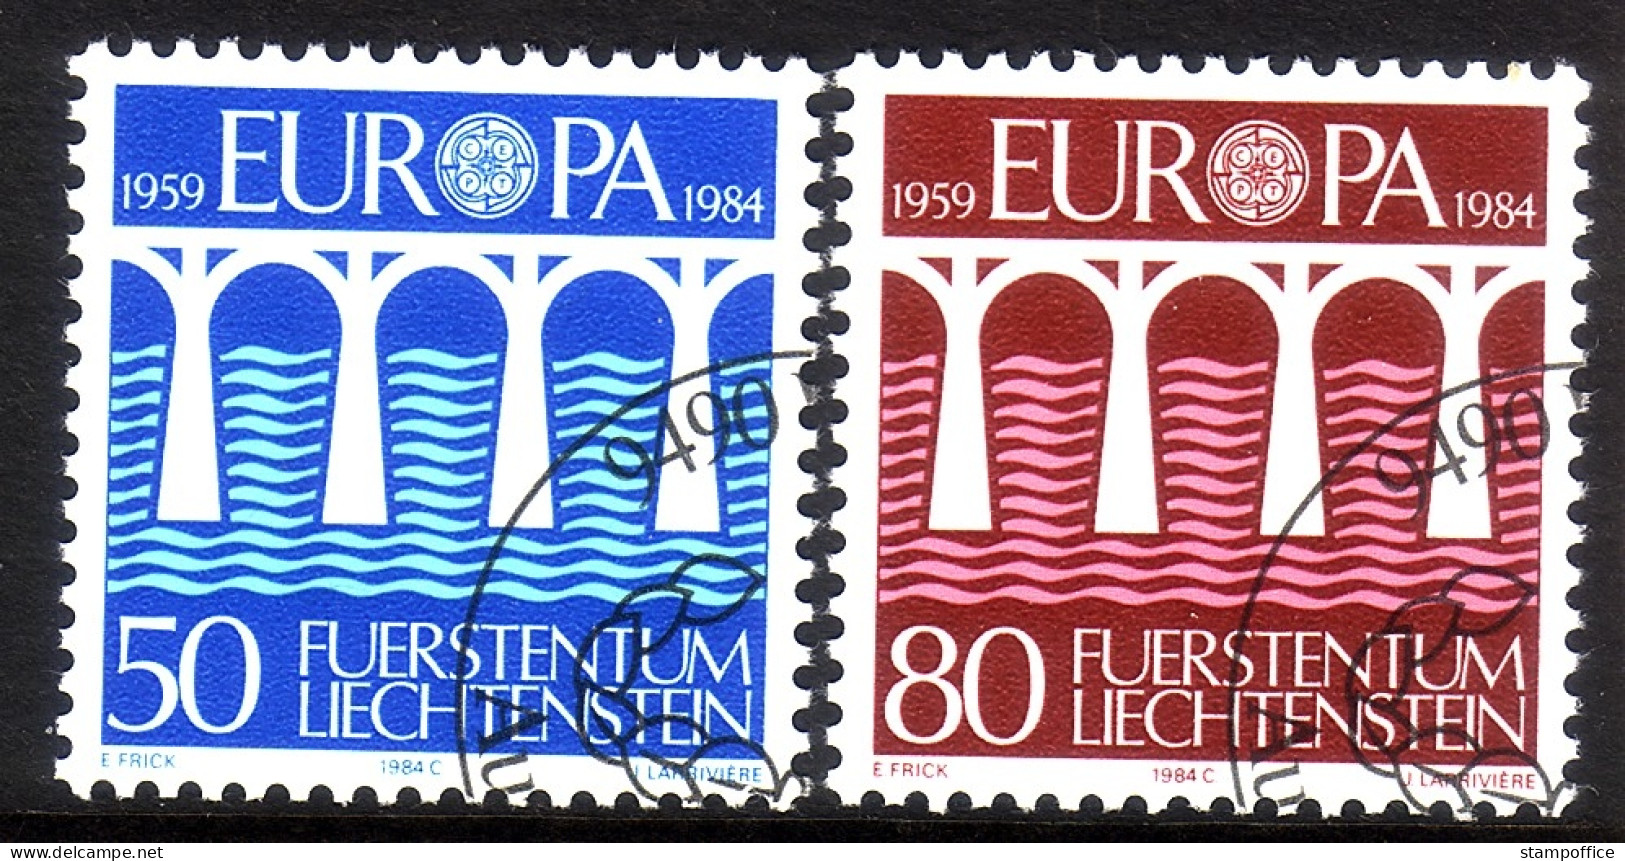 LIECHTENSTEIN MI-NR. 837-838 GESTEMPELT(USED) EUROPA 1984 BRÜCKE - 1984